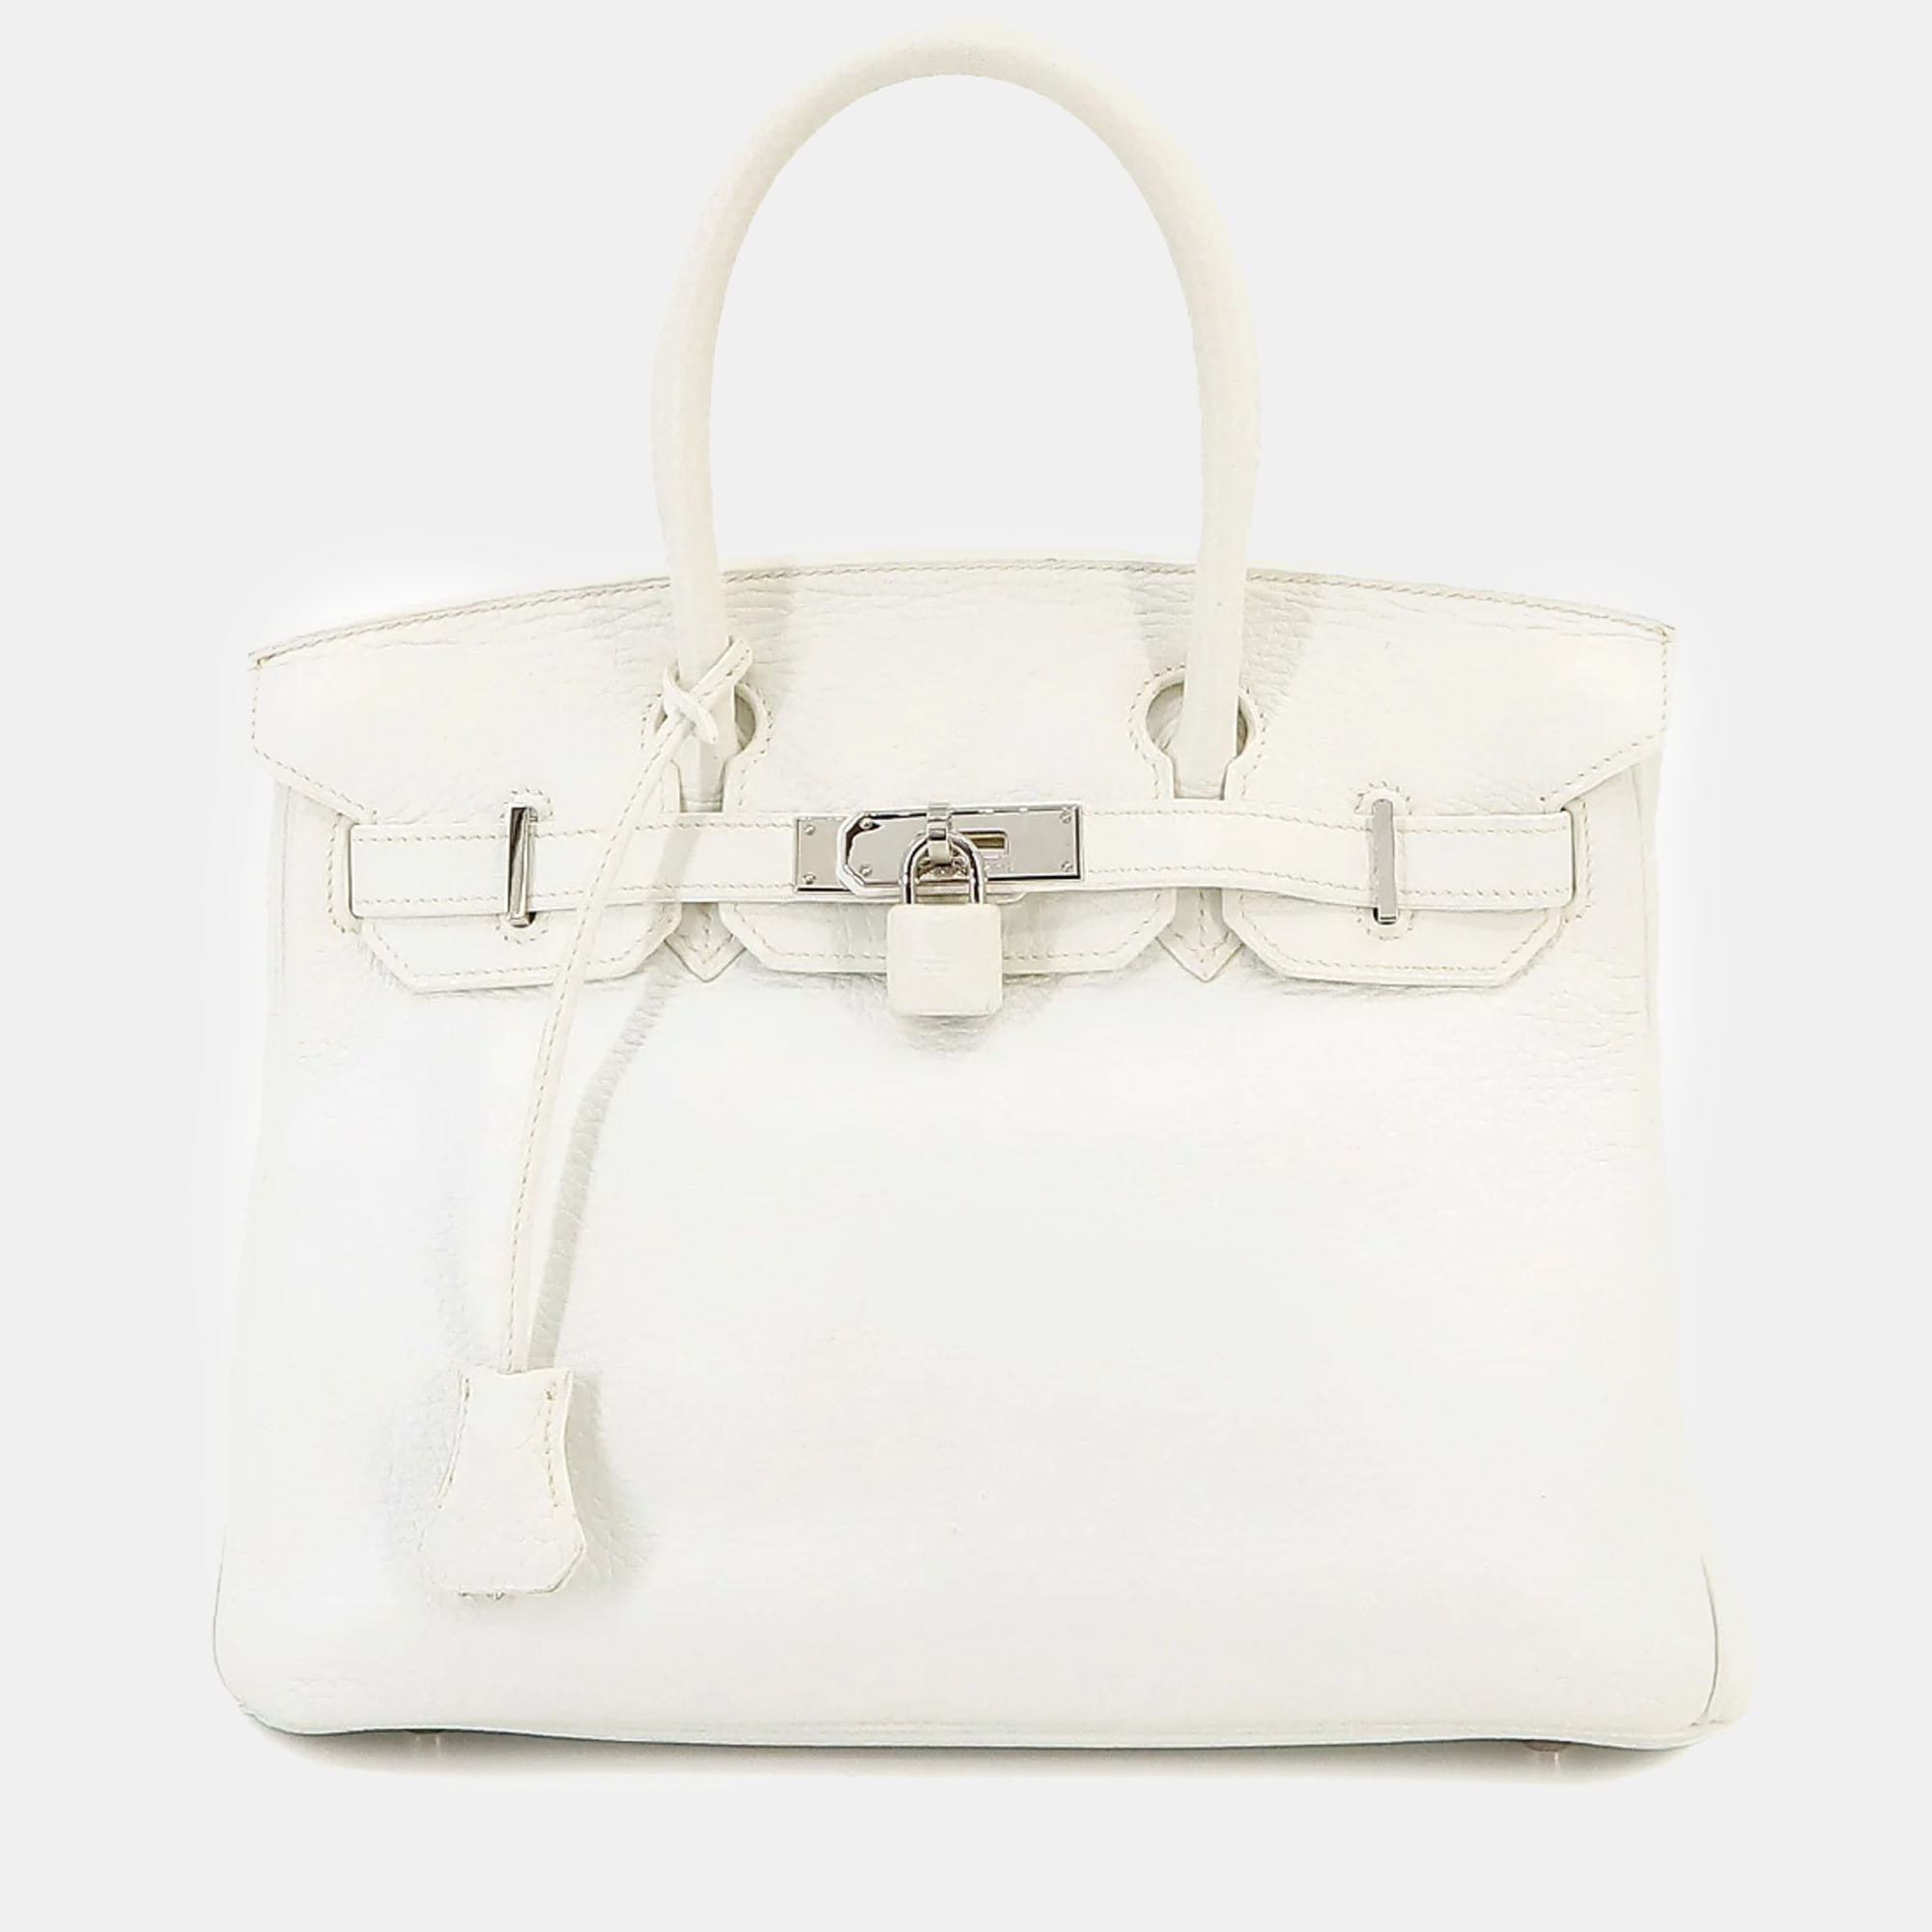 Hermes white taurillon clemence birkin 30 handbag